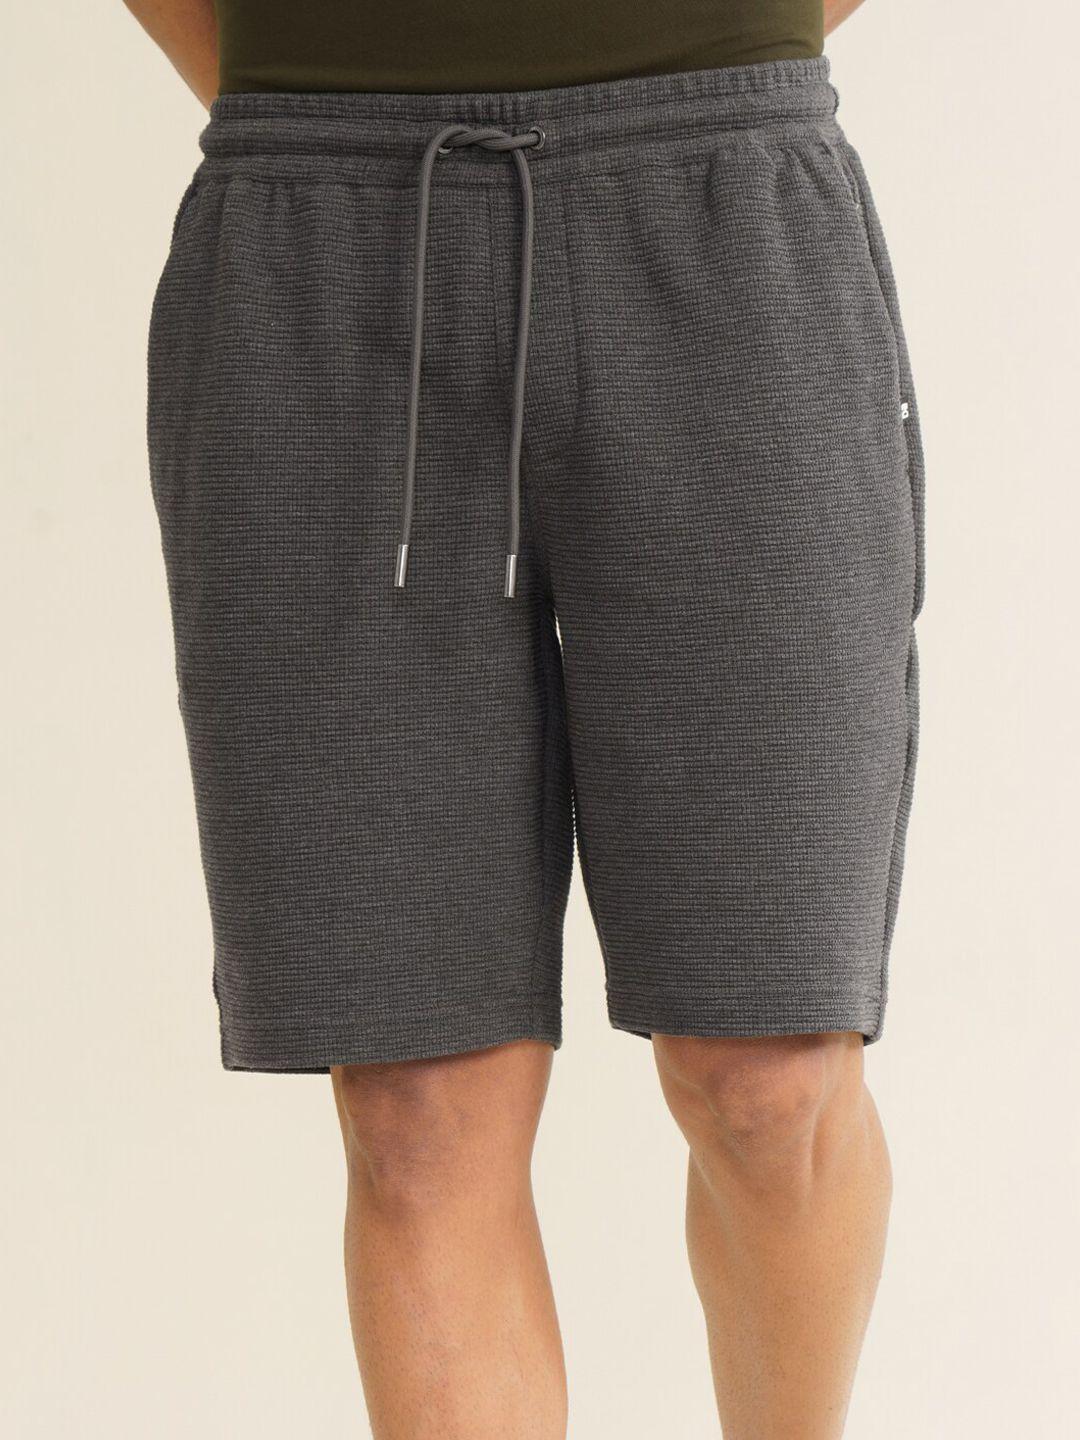 damensch men self design regular shorts